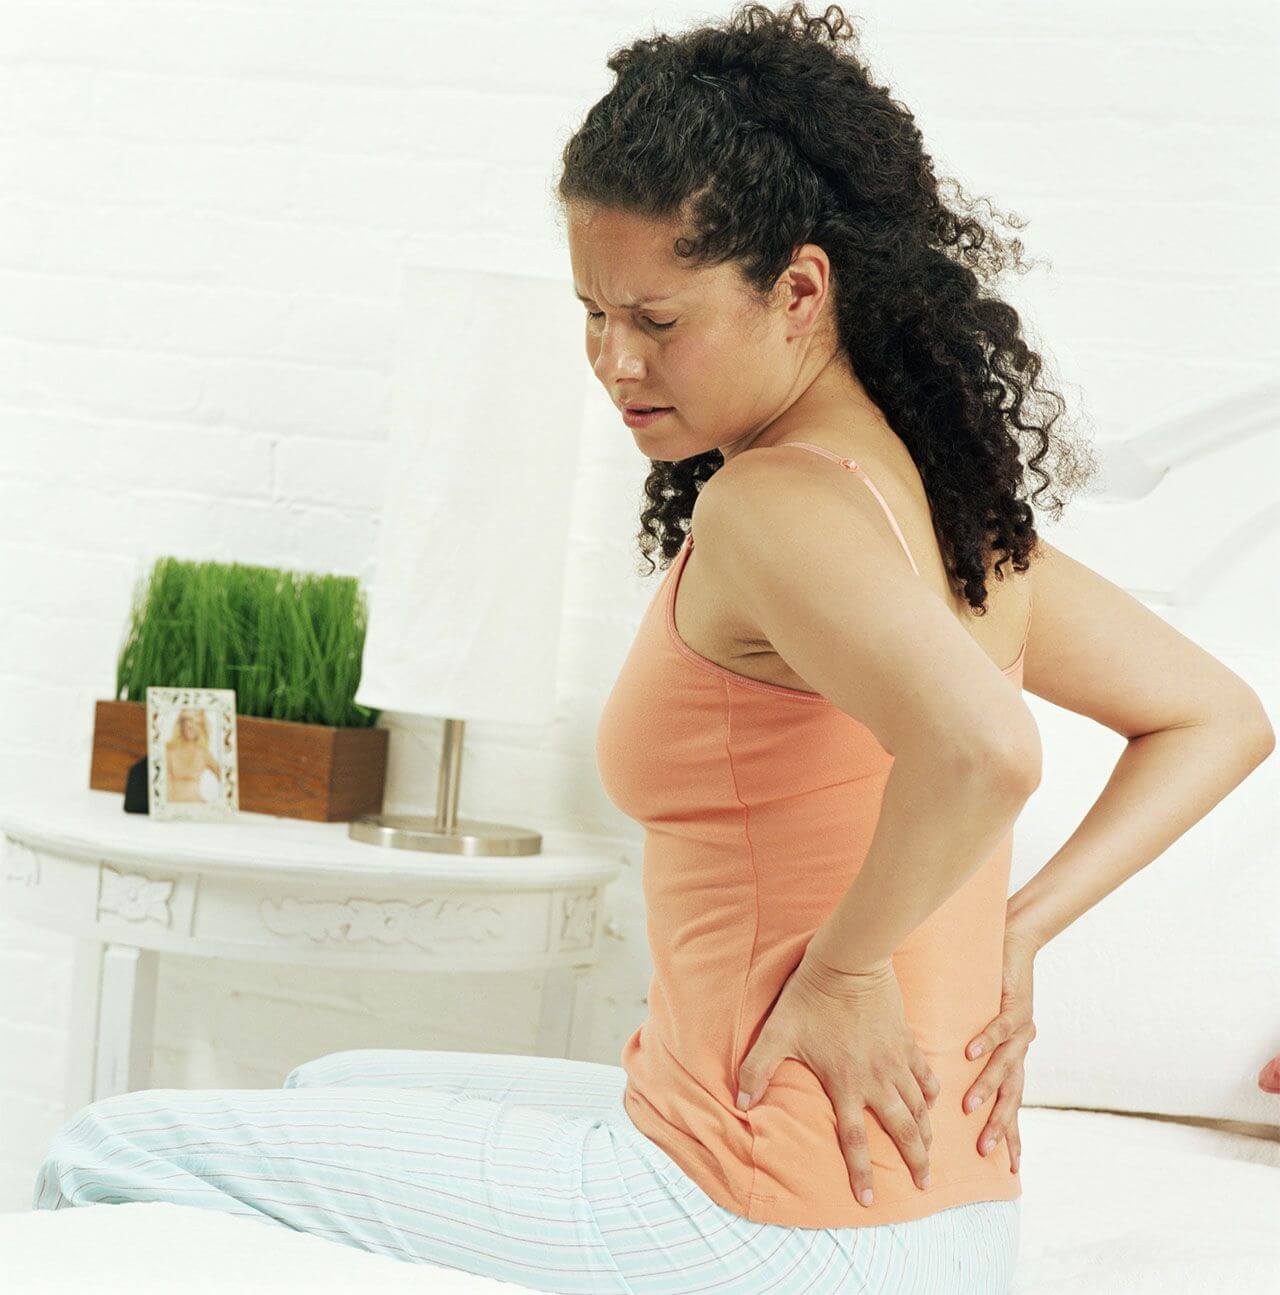 Can a mattress affect back pain?